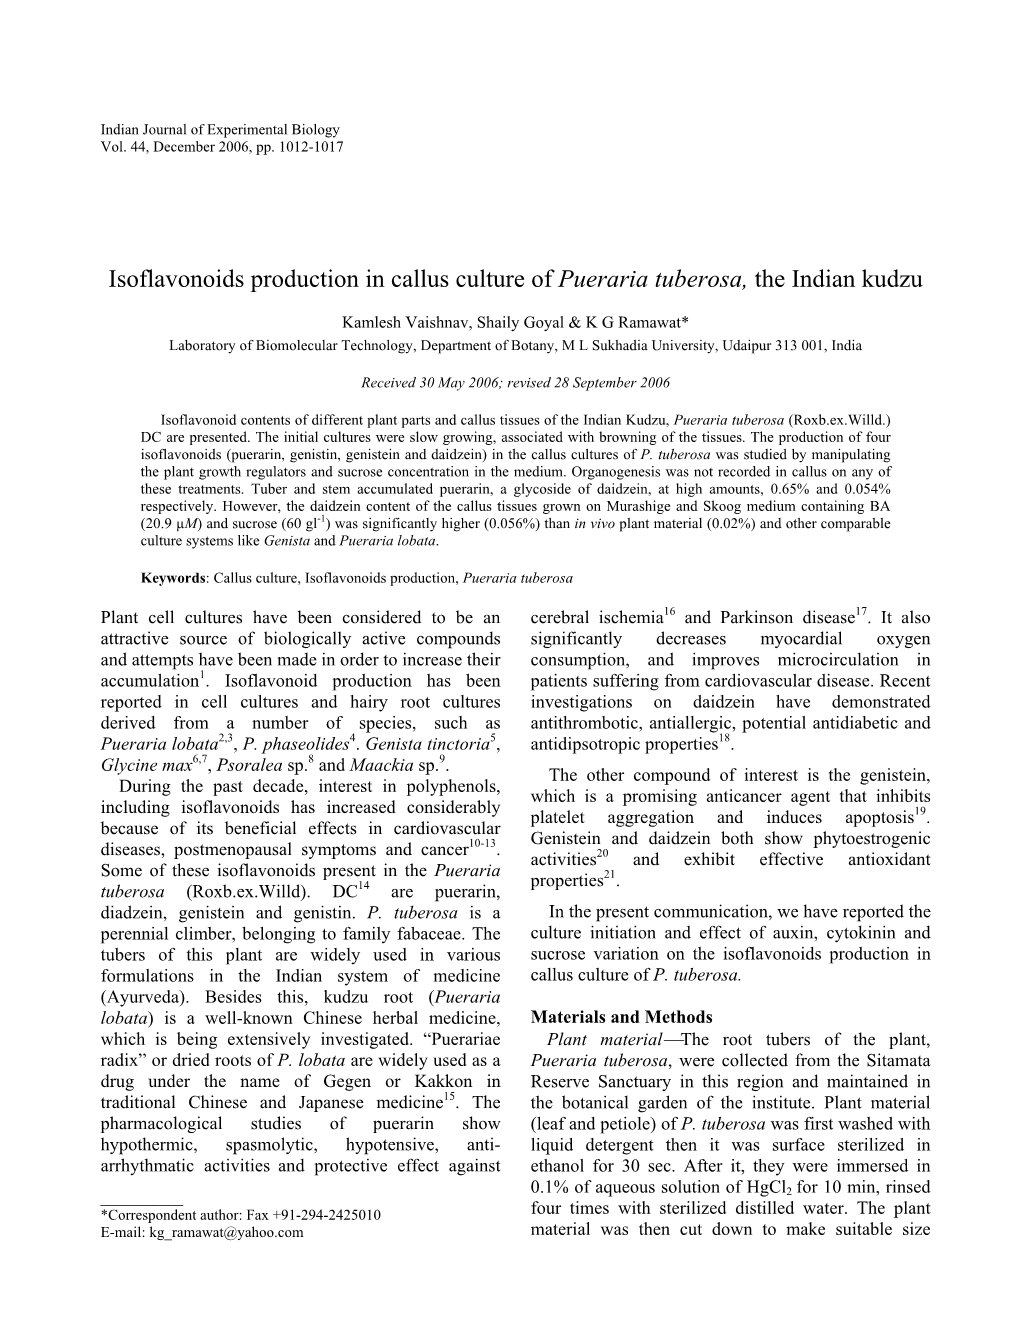 Isoflavonoids Production in Callus Culture of Pueraria Tuberosa, the Indian Kudzu